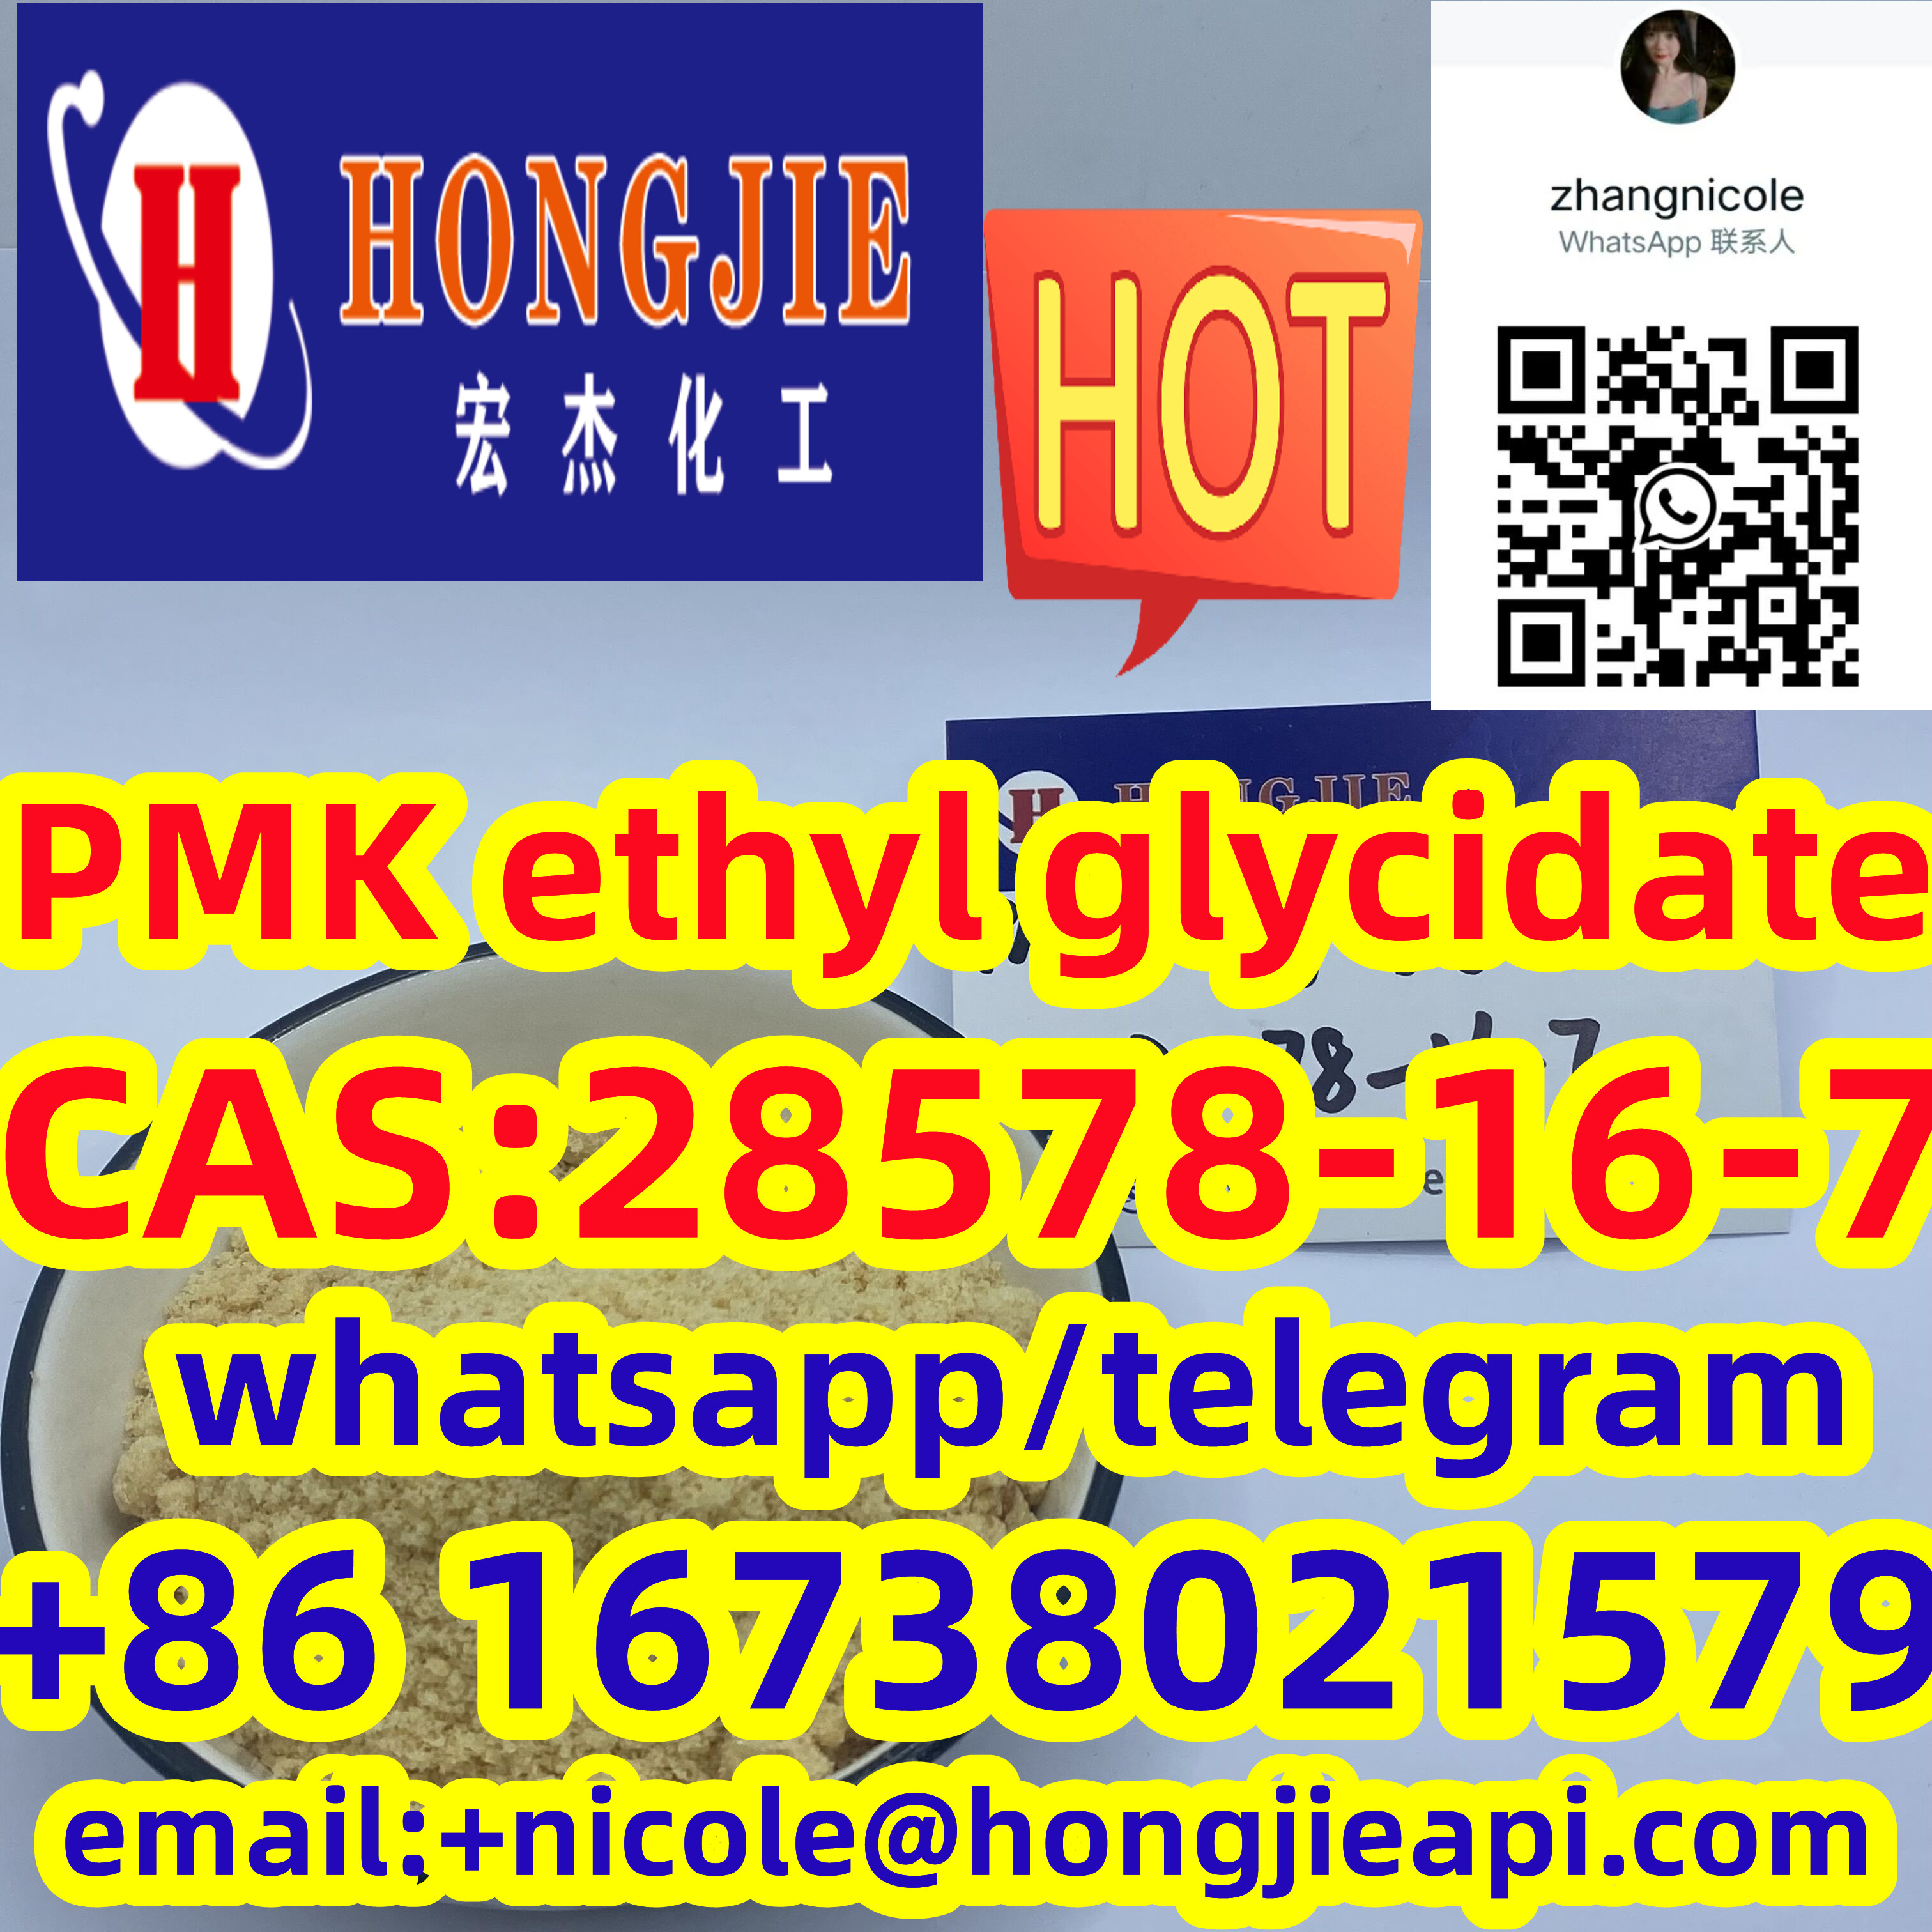 High quality 28578-16-7 PMK ethyl glycidate